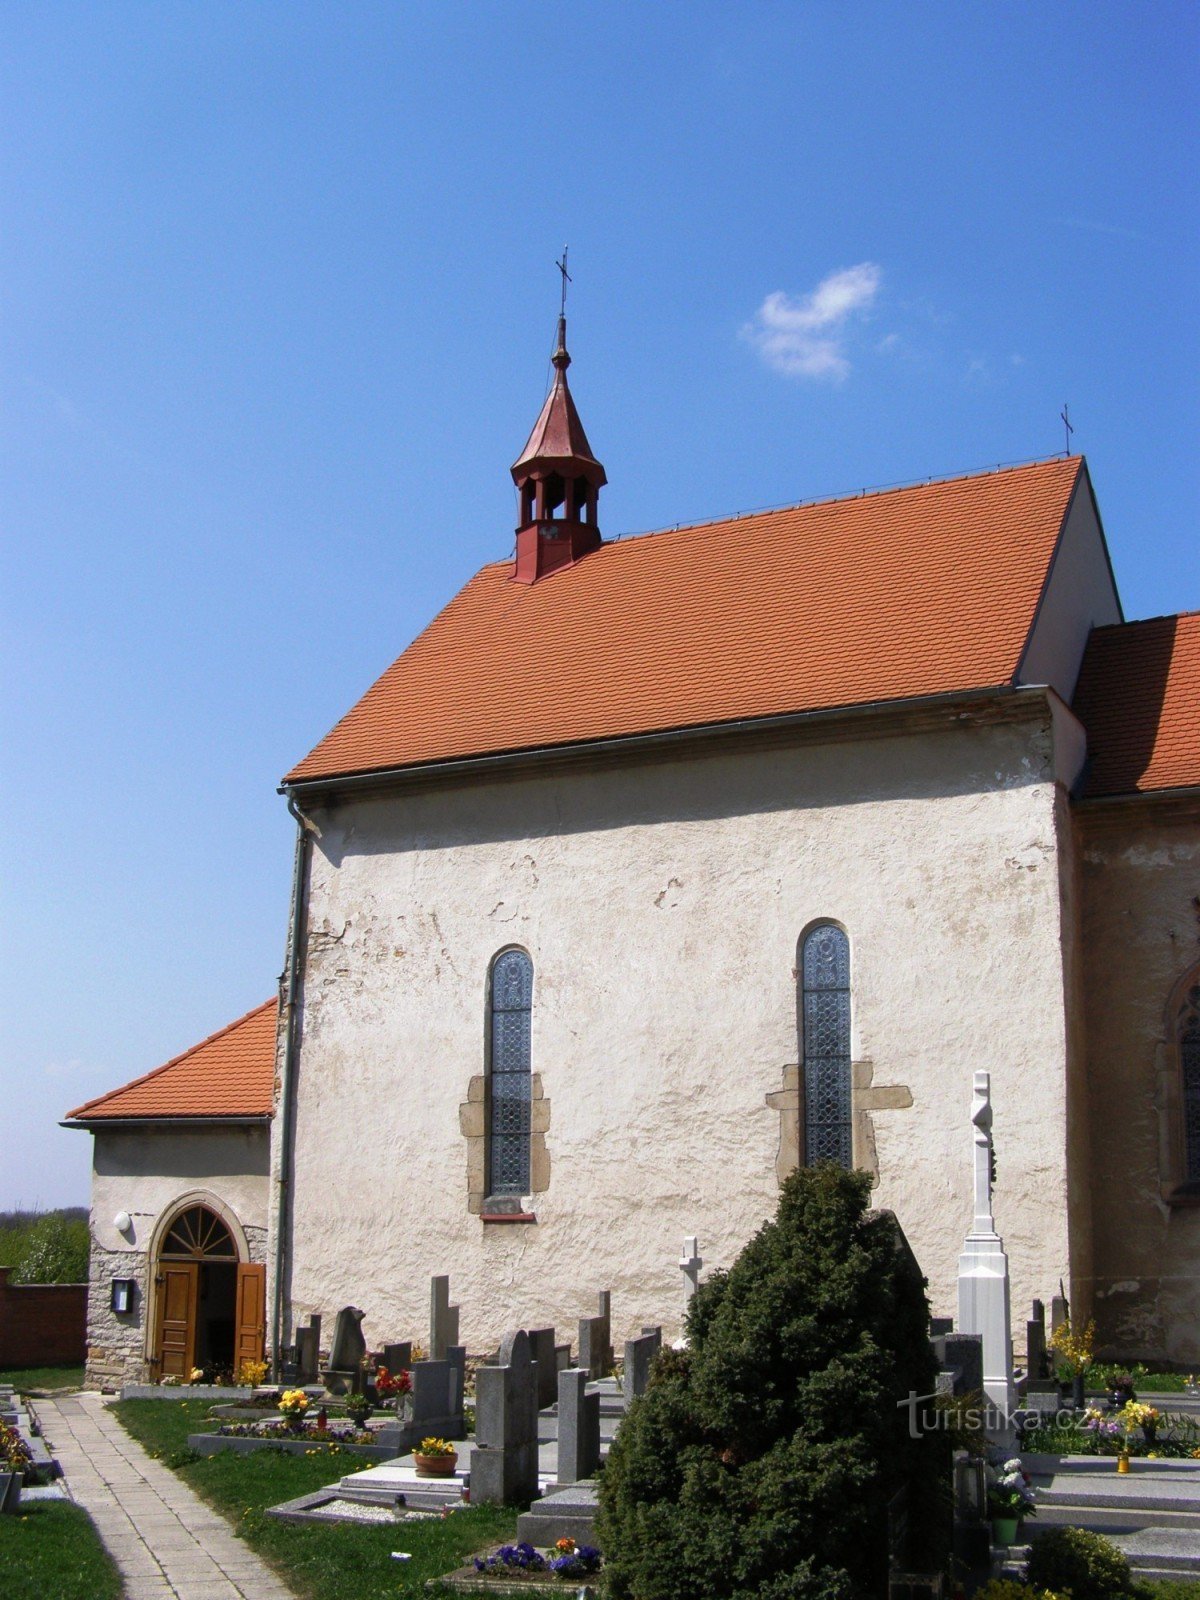 Чернчице - церковь св. Джейкоб с колокольней